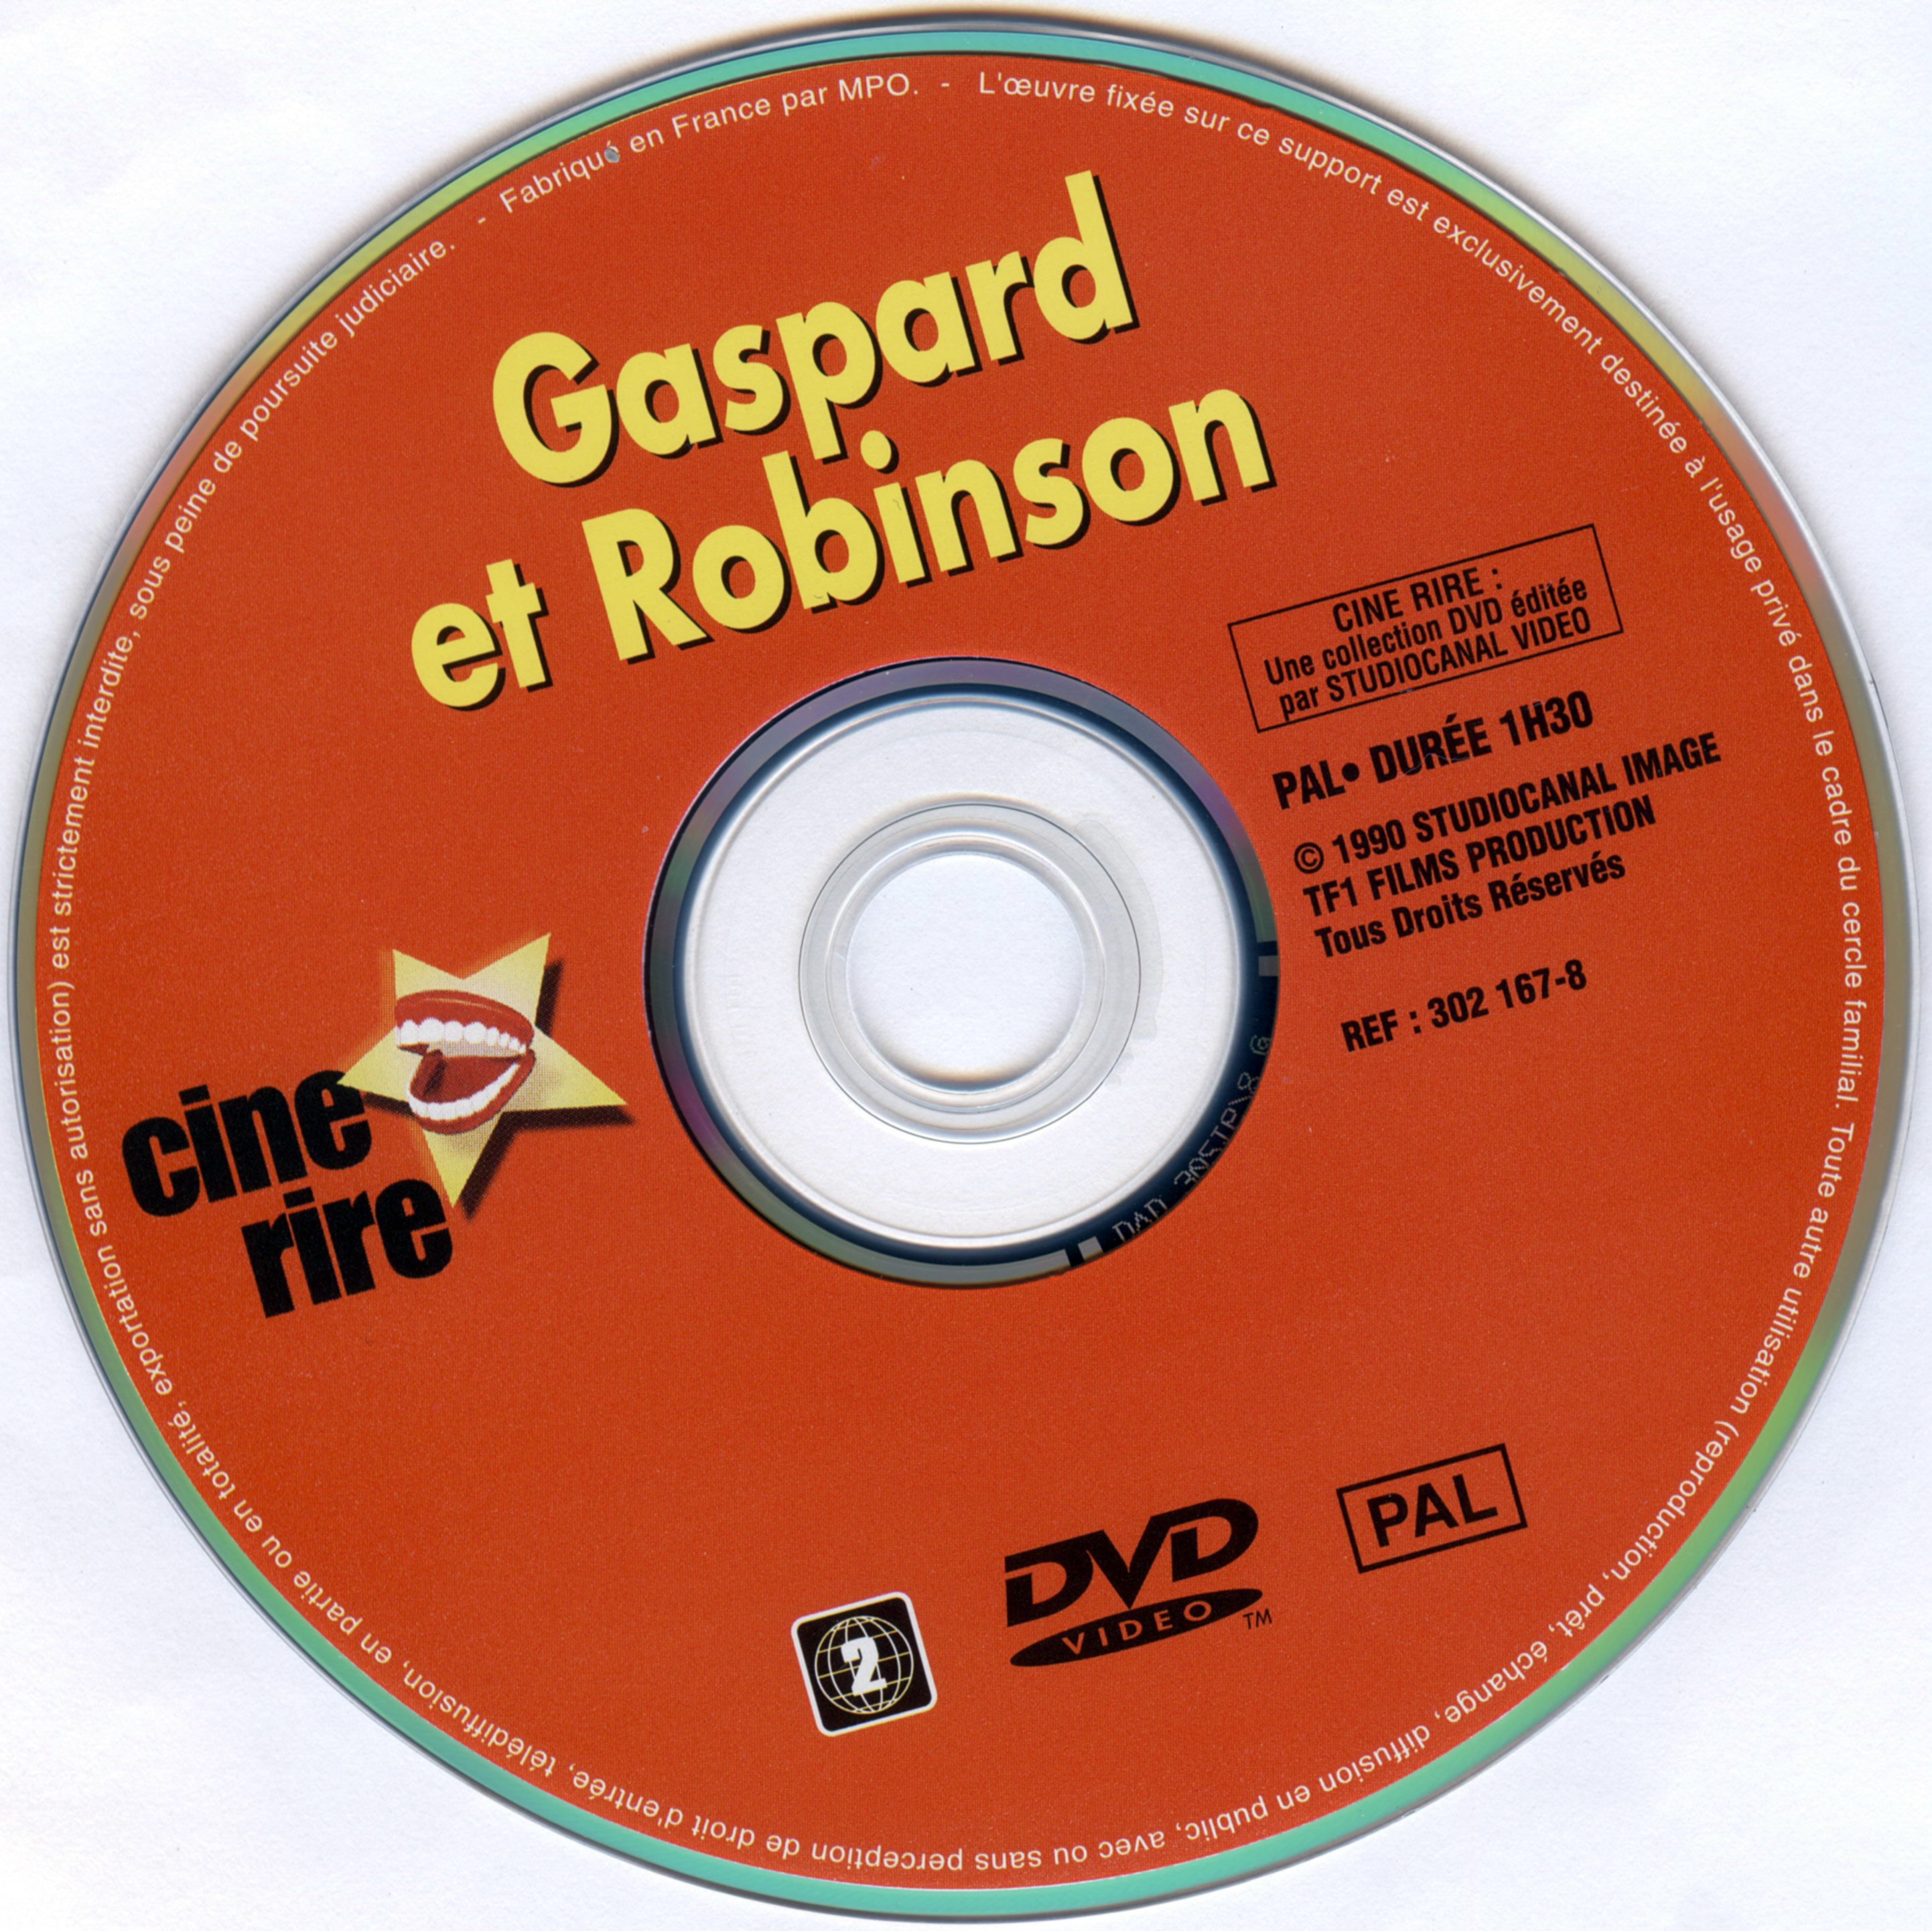 Gaspard et Robinson